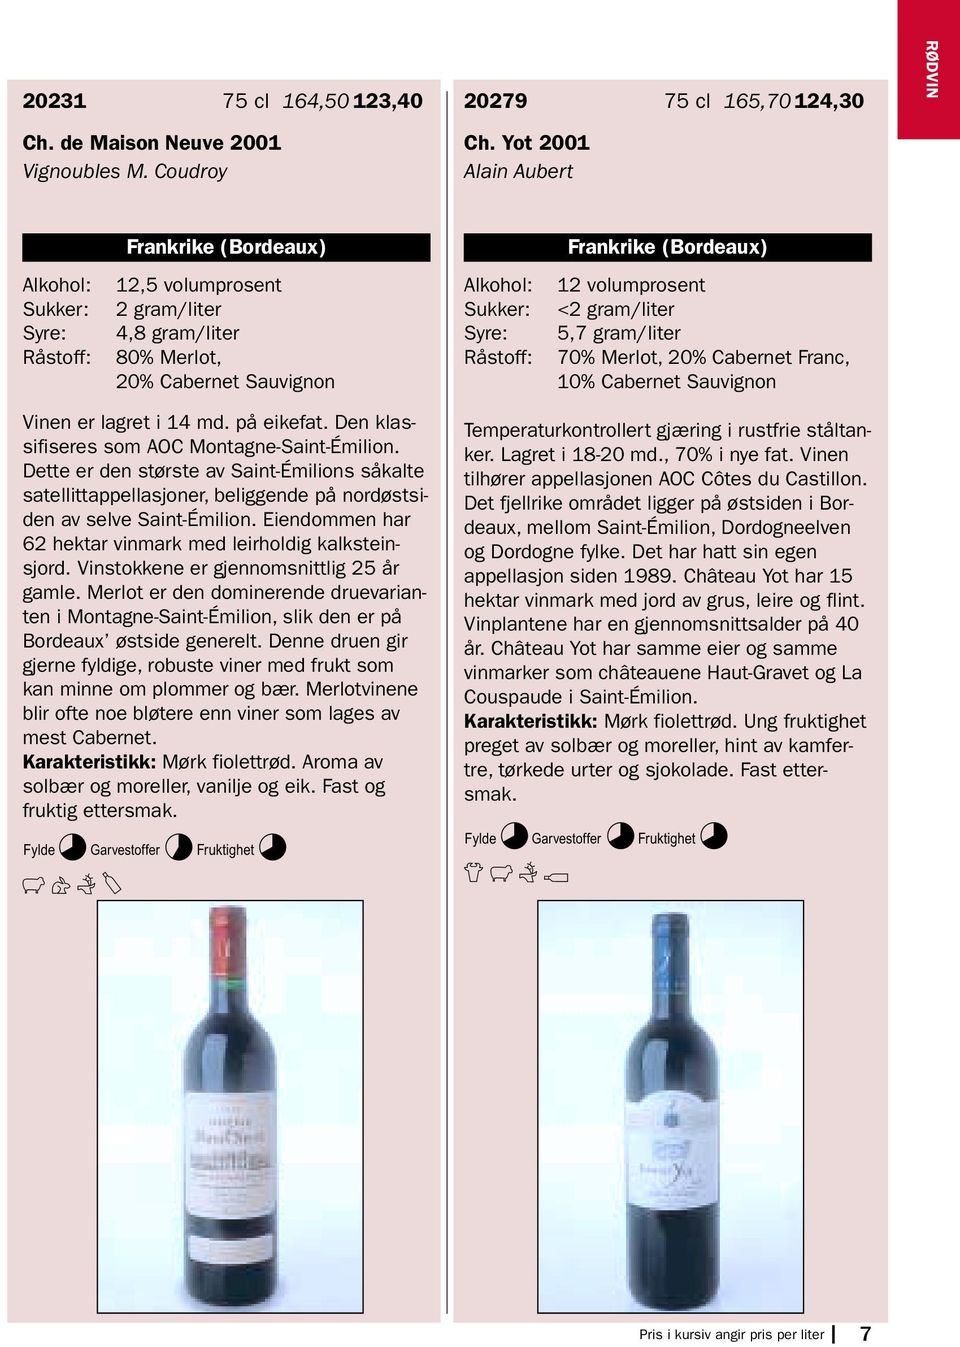 Merlot, 20% Cabernet Franc, 10% Cabernet Sauvignon Vinen er lagret i 14 md. på eikefat. Den klassifiseres som AOC Montagne-Saint-Émilion.